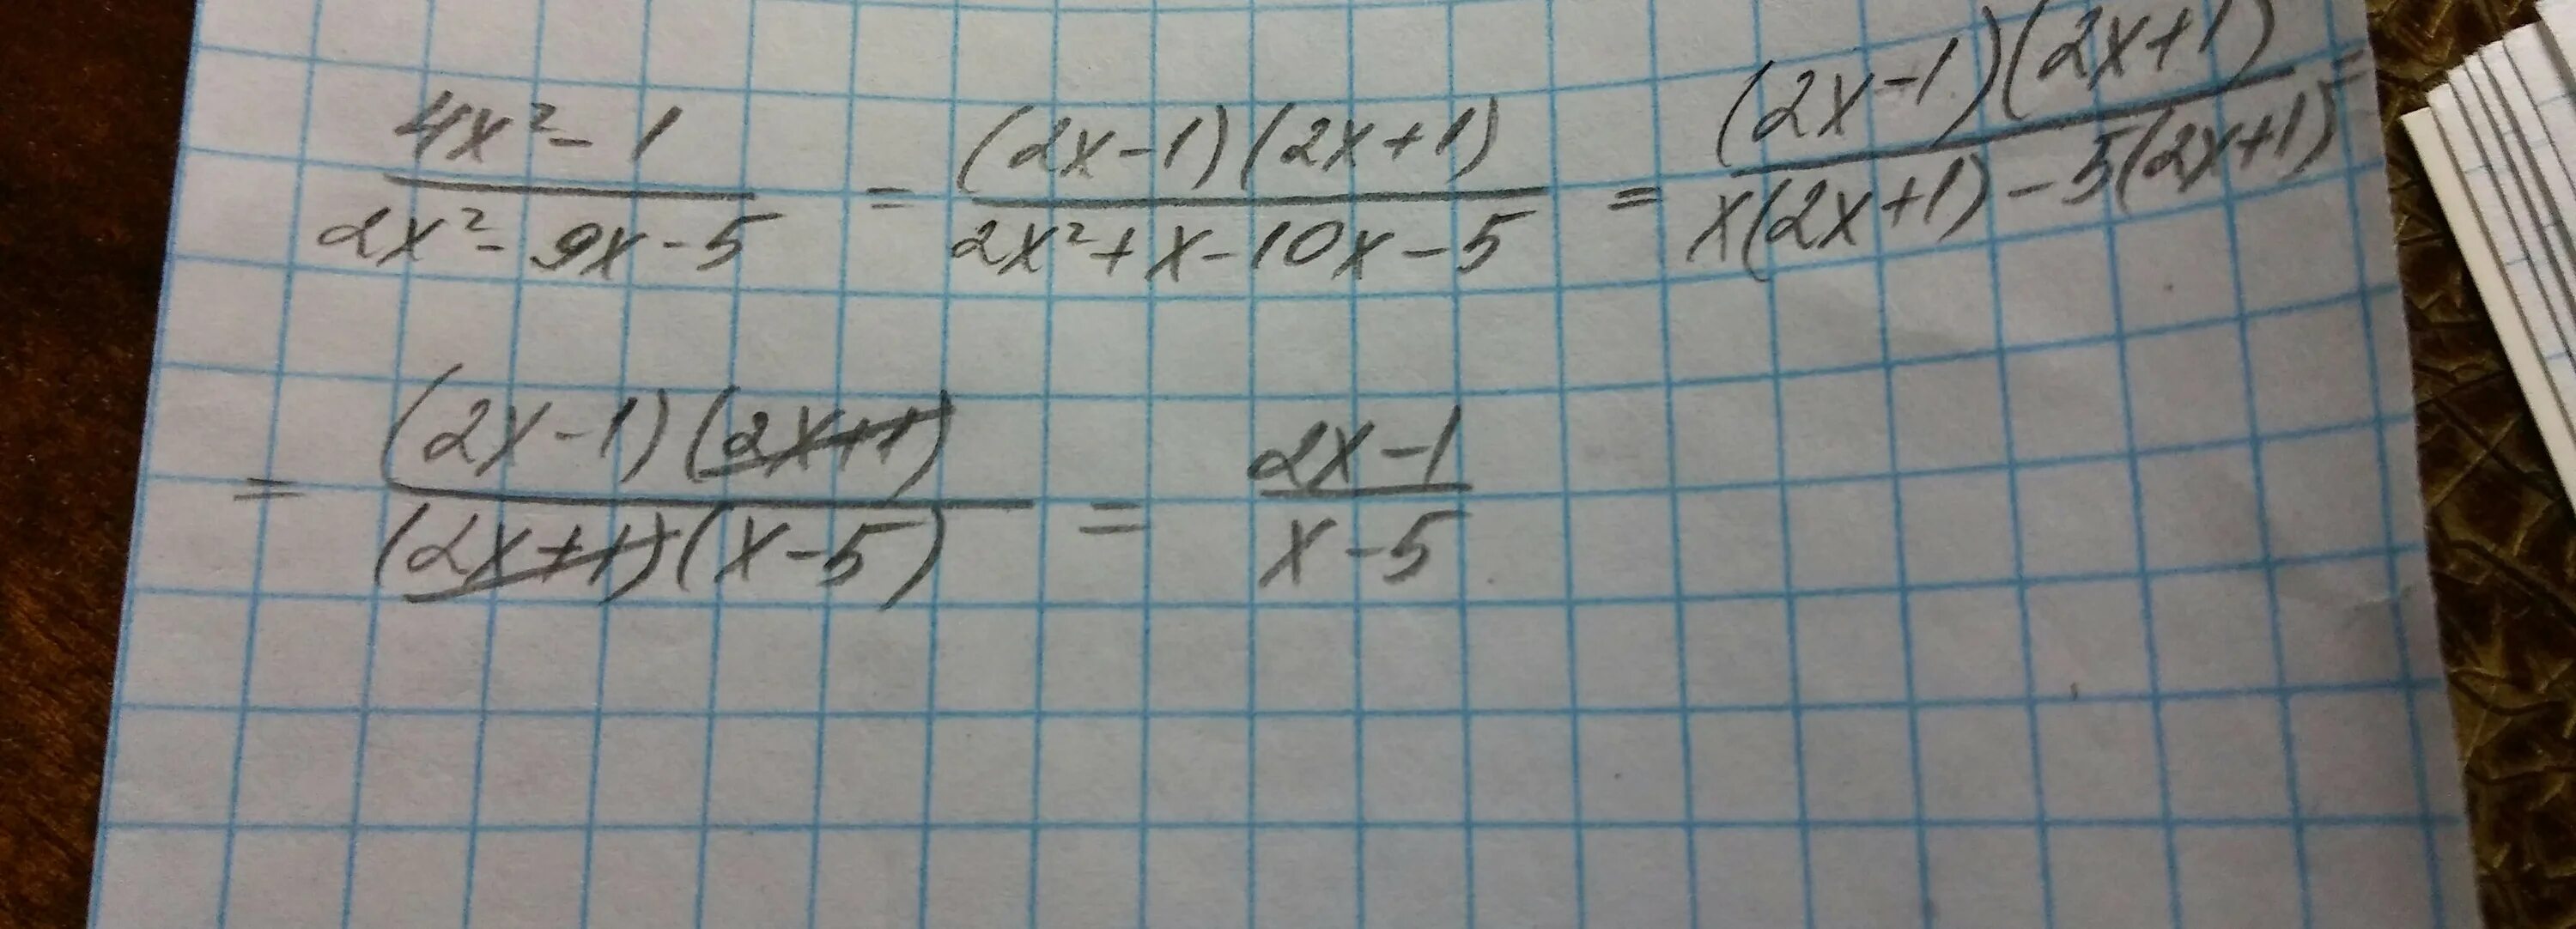 X 2 9x 16. Сократите дробь 4x^2-1:2x^2-5x+2=. Сократите дробь 4x+4. (X+X^1/2) /2x сократить дробь. Сократите дробь x −15 ⋅5x 8 (2x) 2 ⋅x −9.